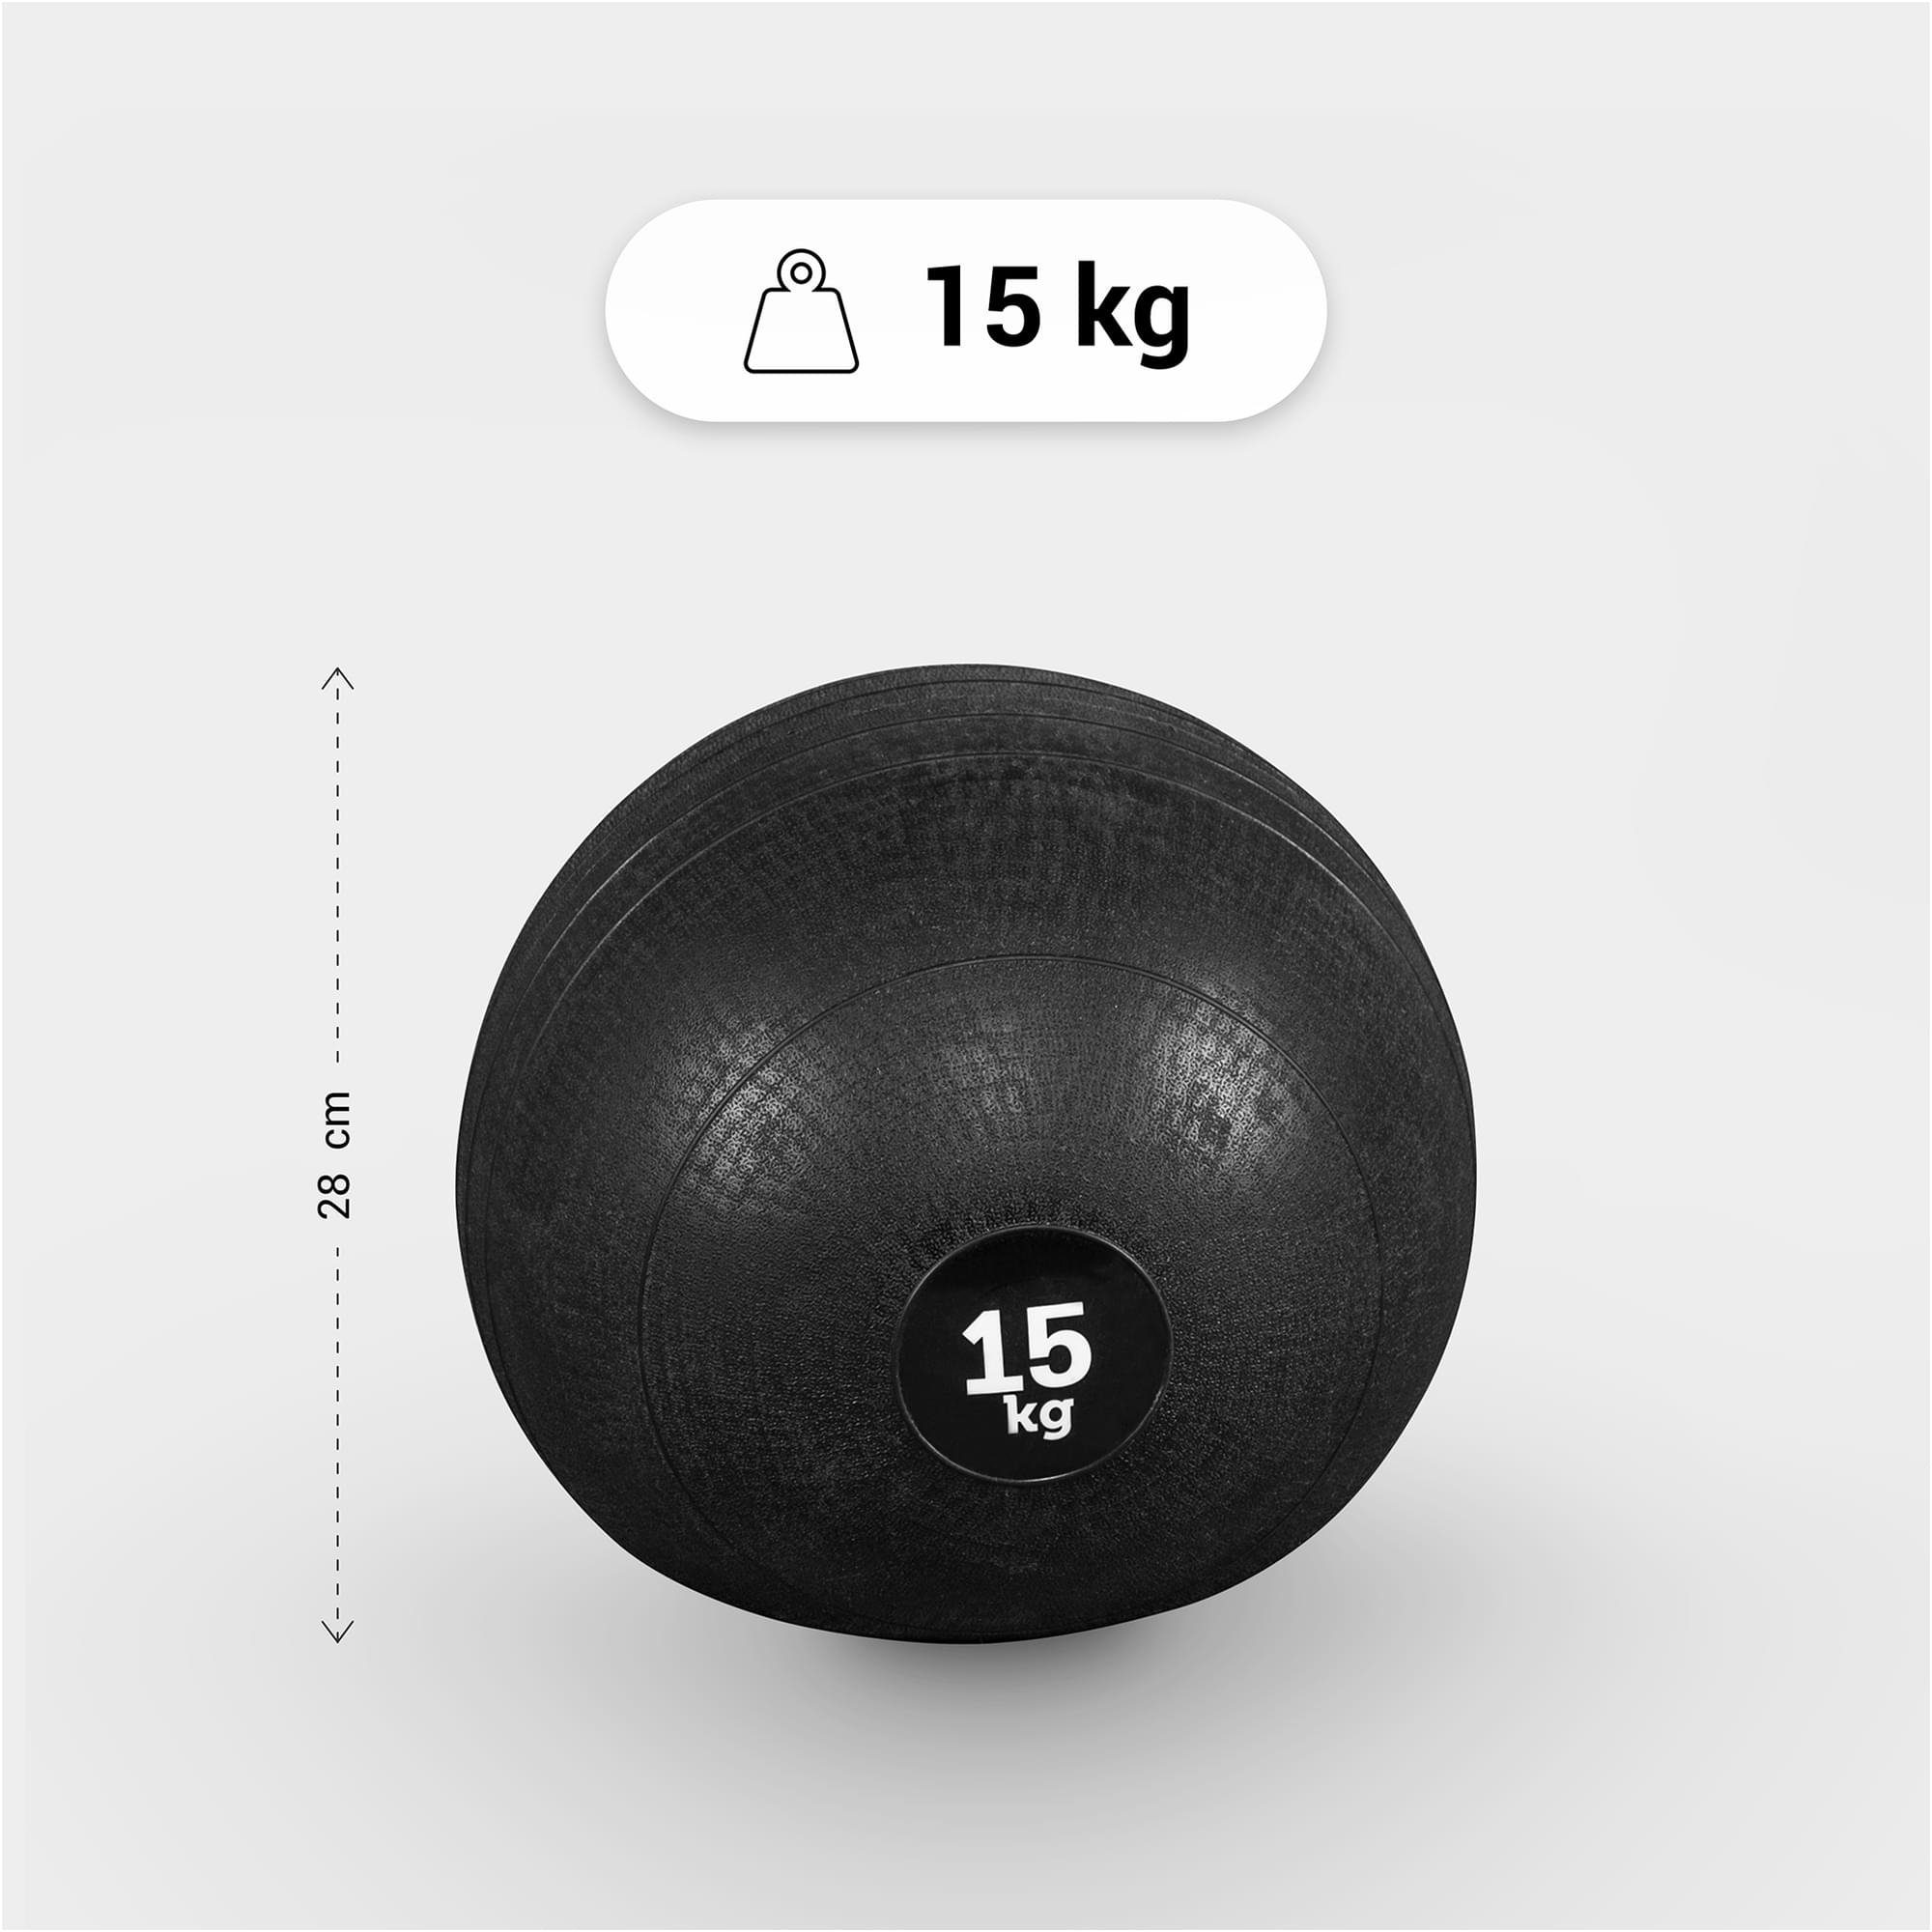 Medizinball 15kg, SPORTS 3kg, 20kg, Griffiger Einzeln/Set, GORILLA mit 5kg, Oberfläche 10kg, Set 7kg, 25kg